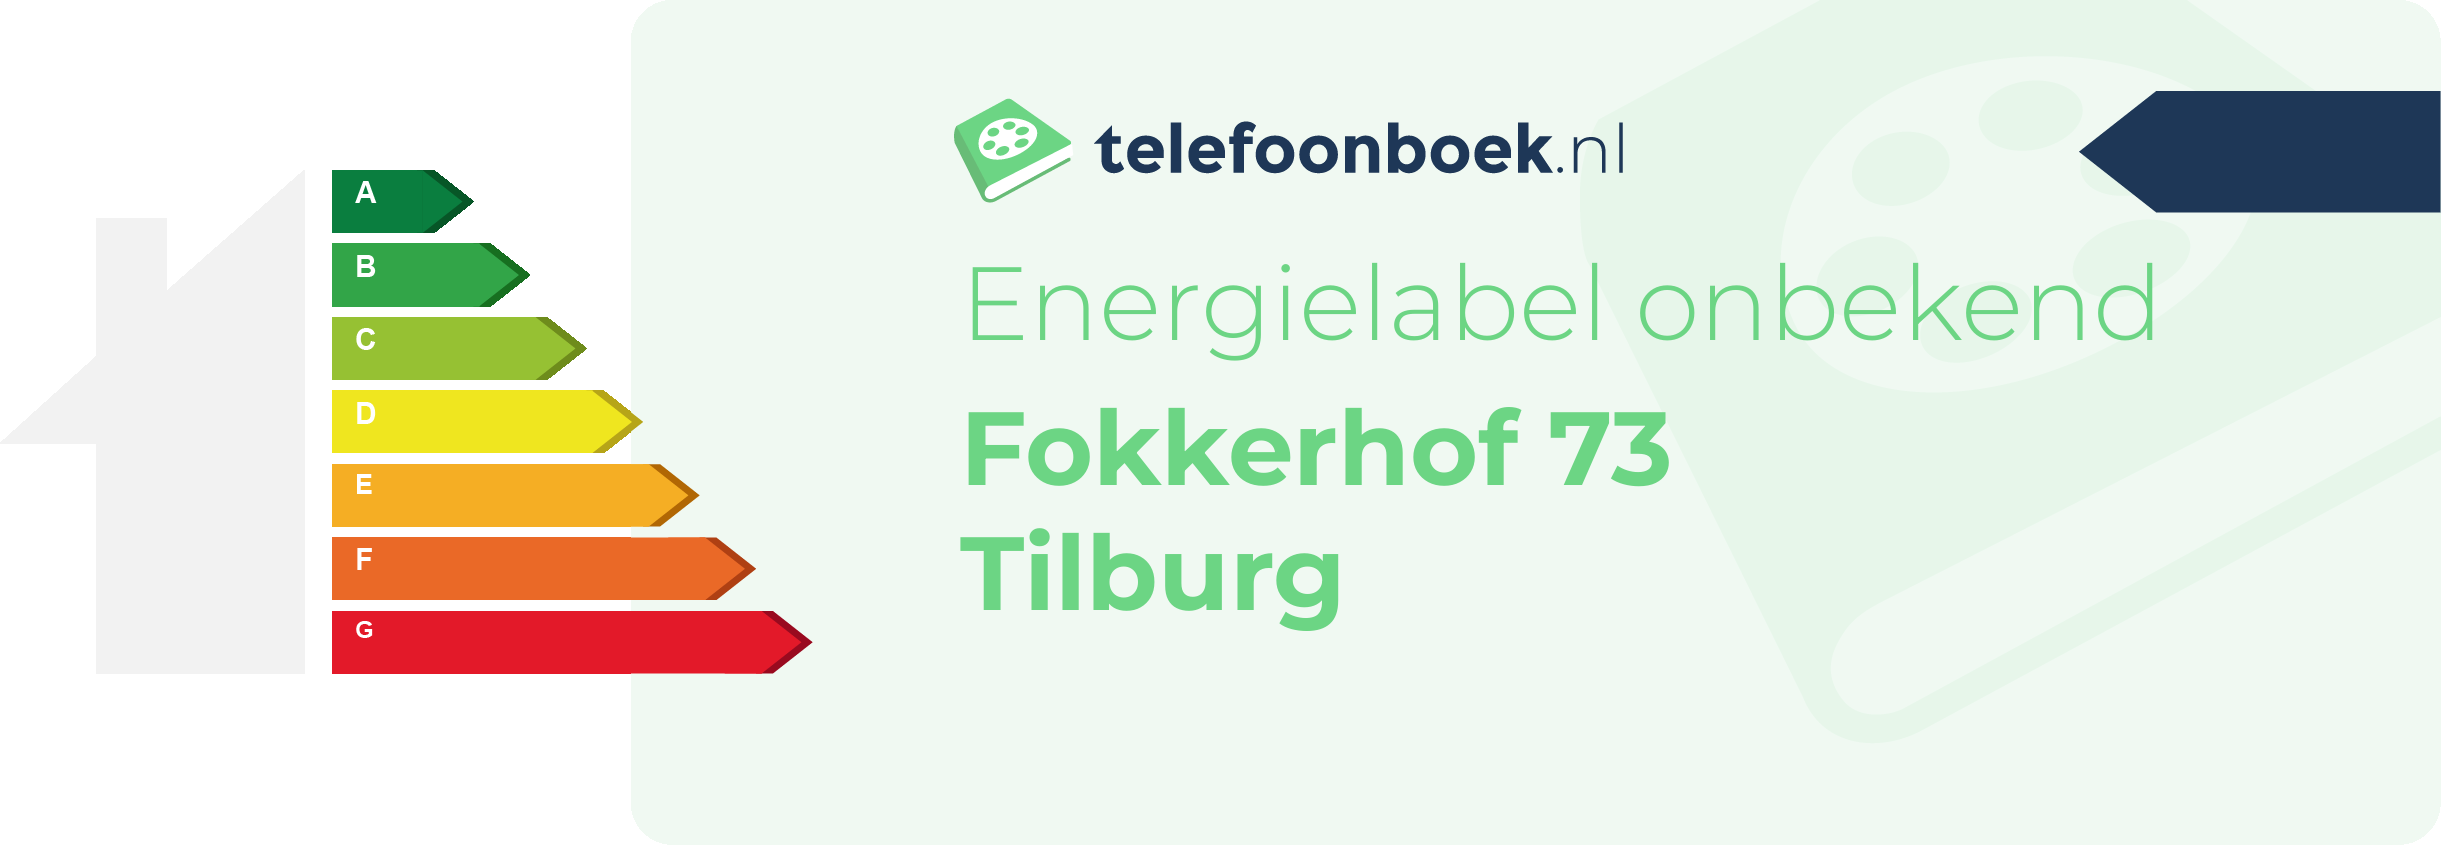 Energielabel Fokkerhof 73 Tilburg